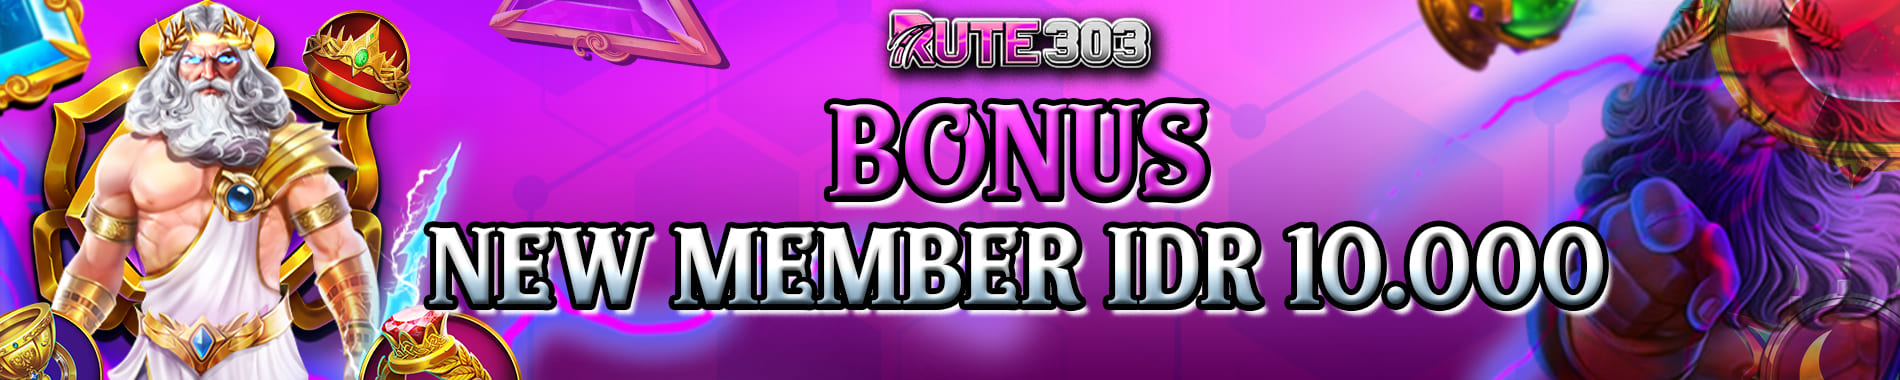 Bonus Togel Member Baru RUTE303